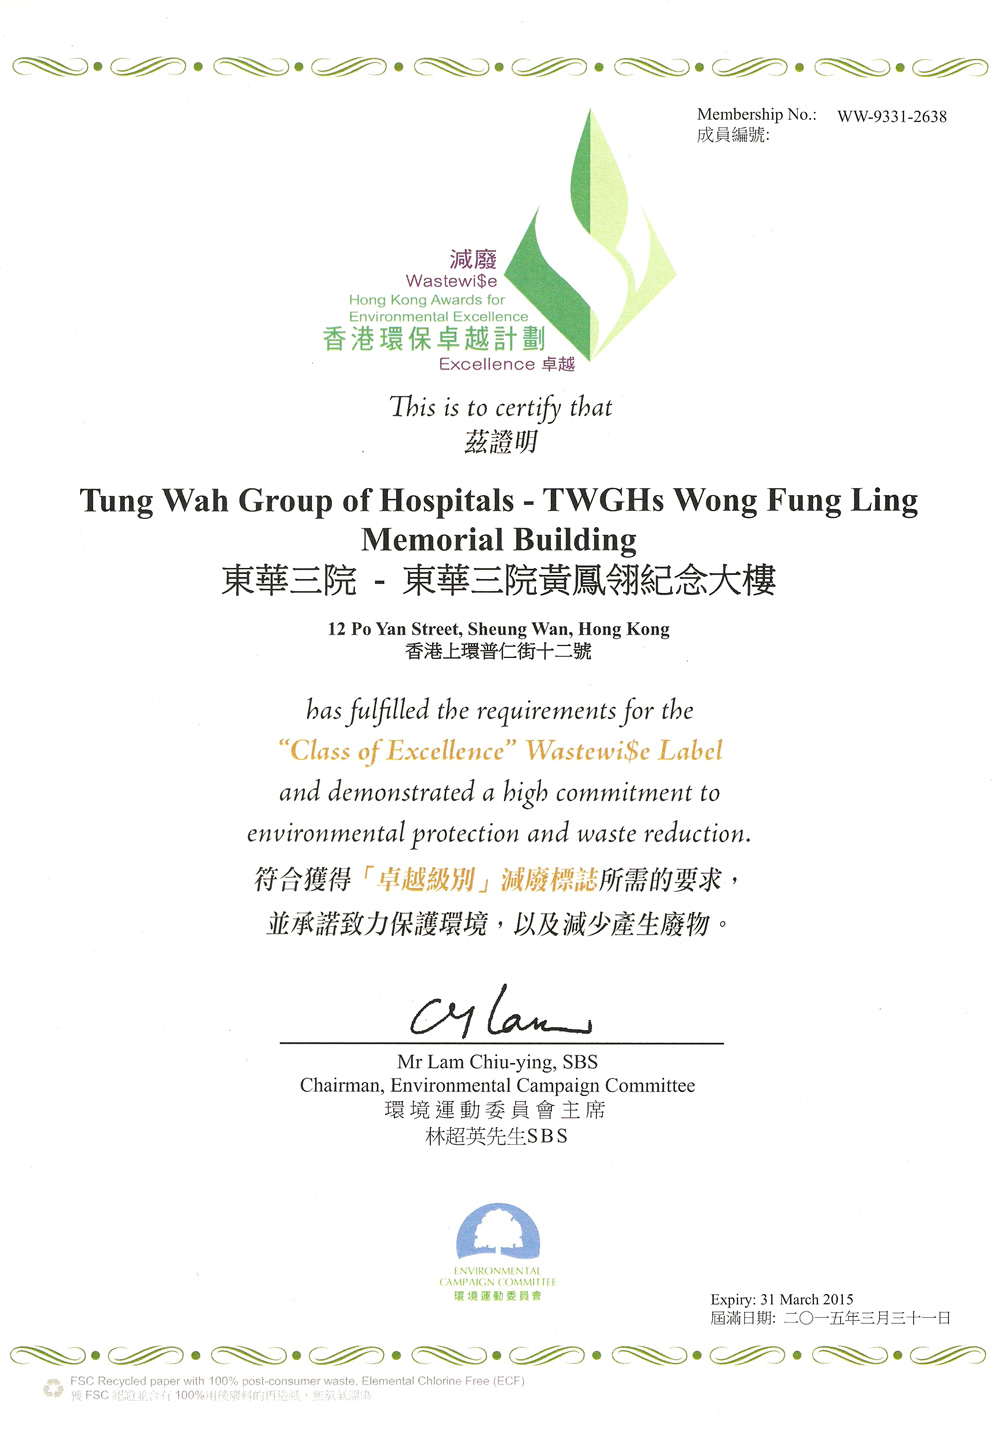 香港环保卓越计划「卓越级别」减废标志证书